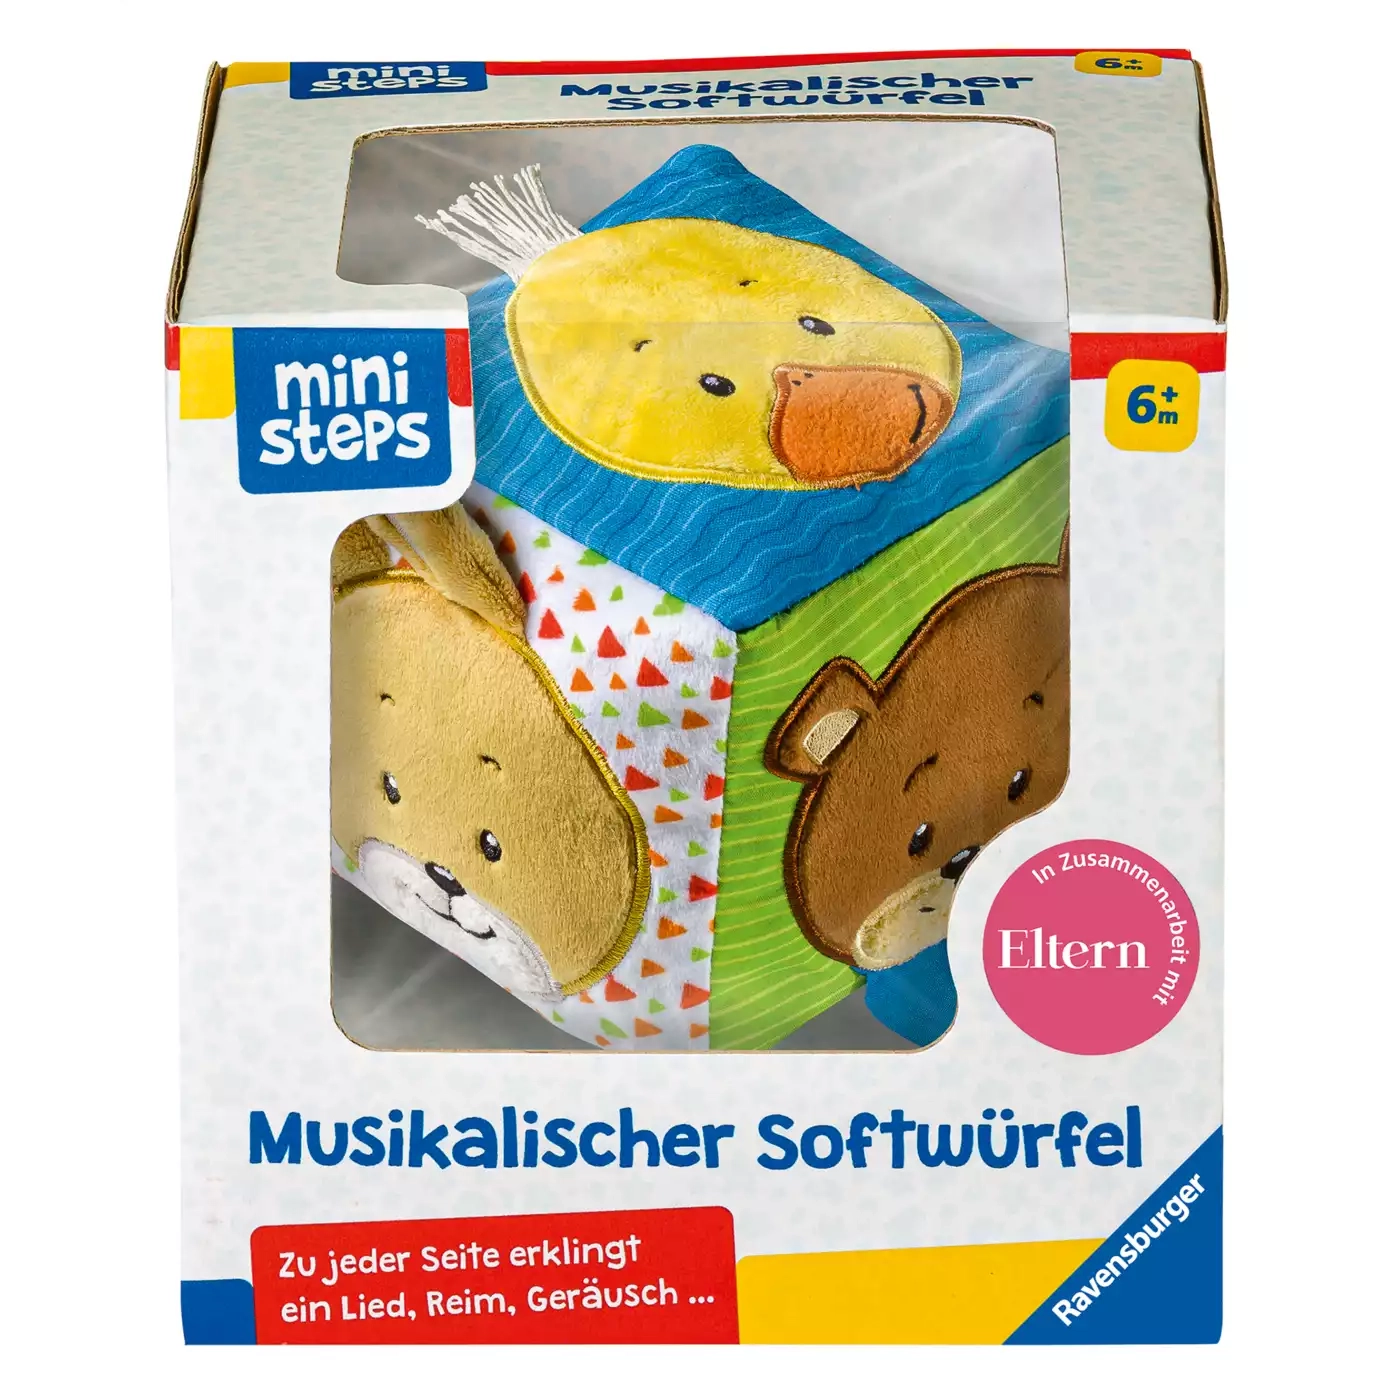 Mini Steps Musikalischer Softwürfel Ravensburger Mehrfarbig 2000579697203 1